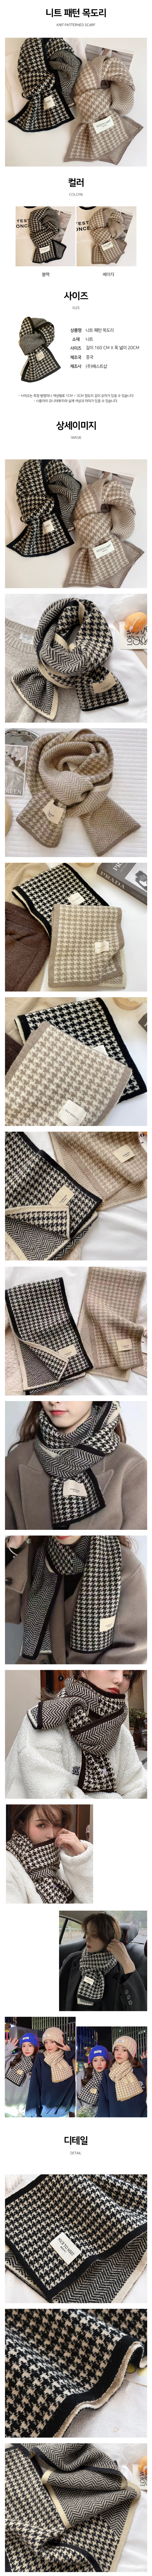 knit_patterned_scarf.jpg